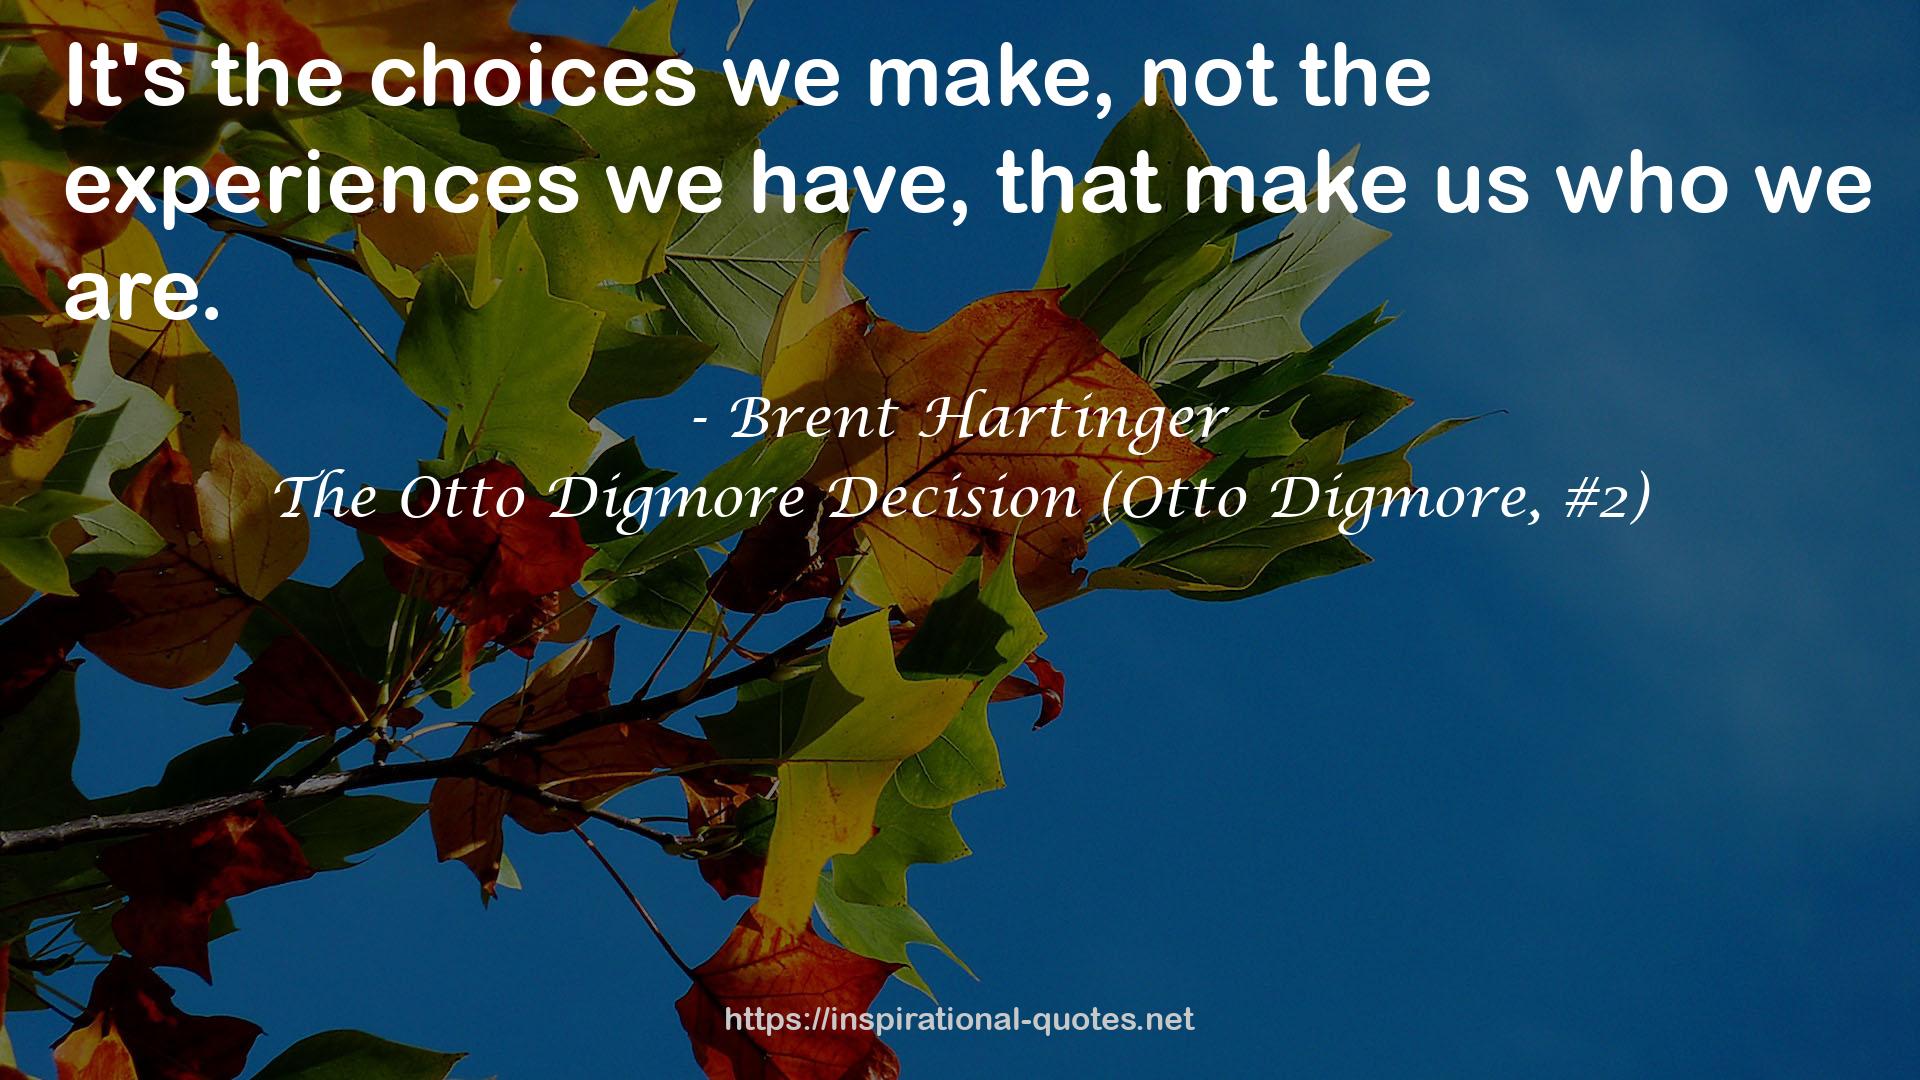 The Otto Digmore Decision (Otto Digmore, #2) QUOTES